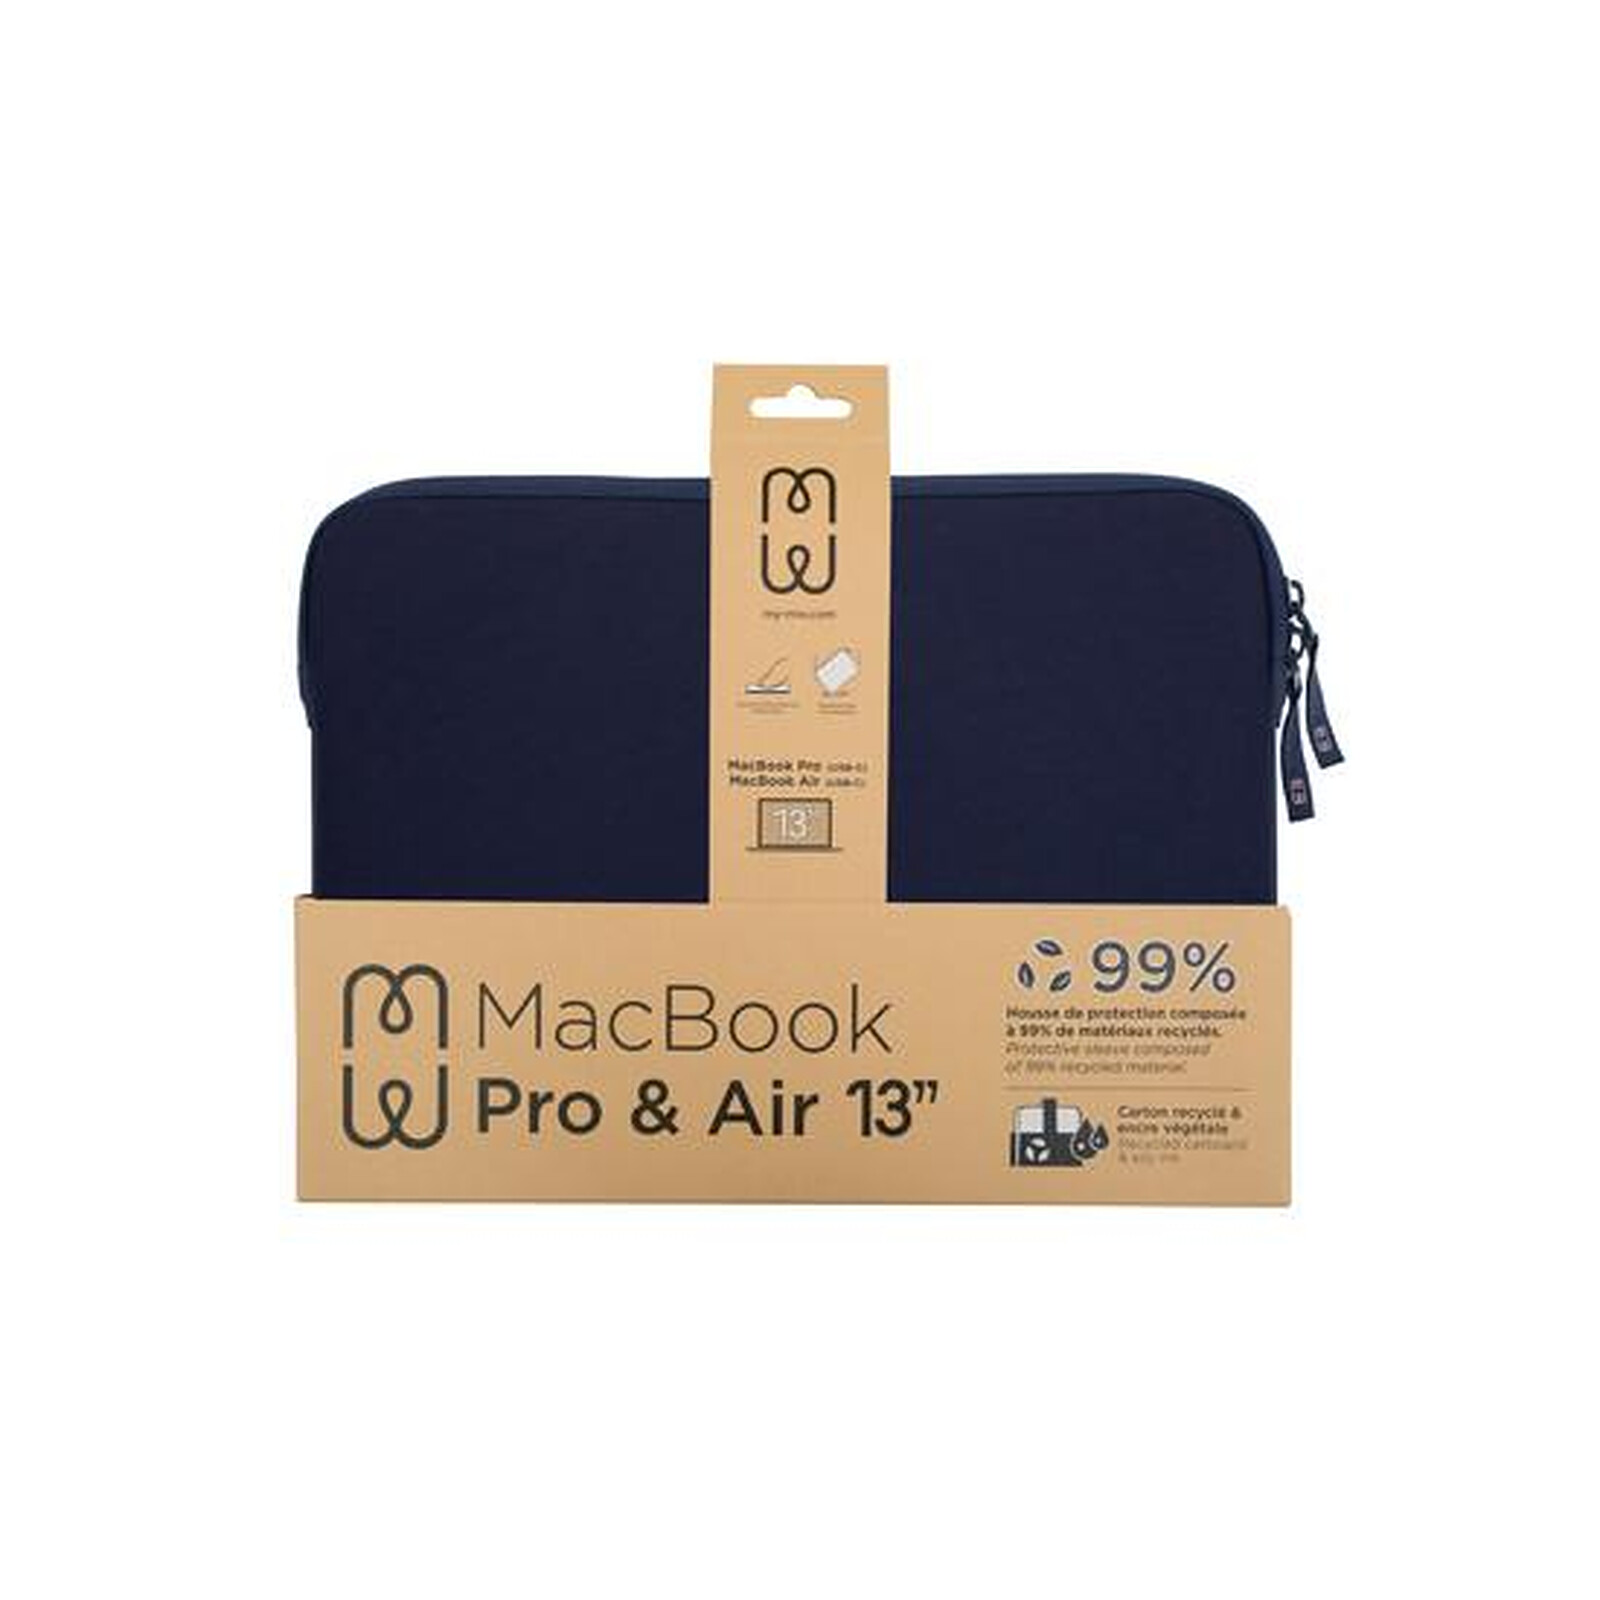 Les housses pour MacBook Pro 13 sont compatibles avec le MacBook